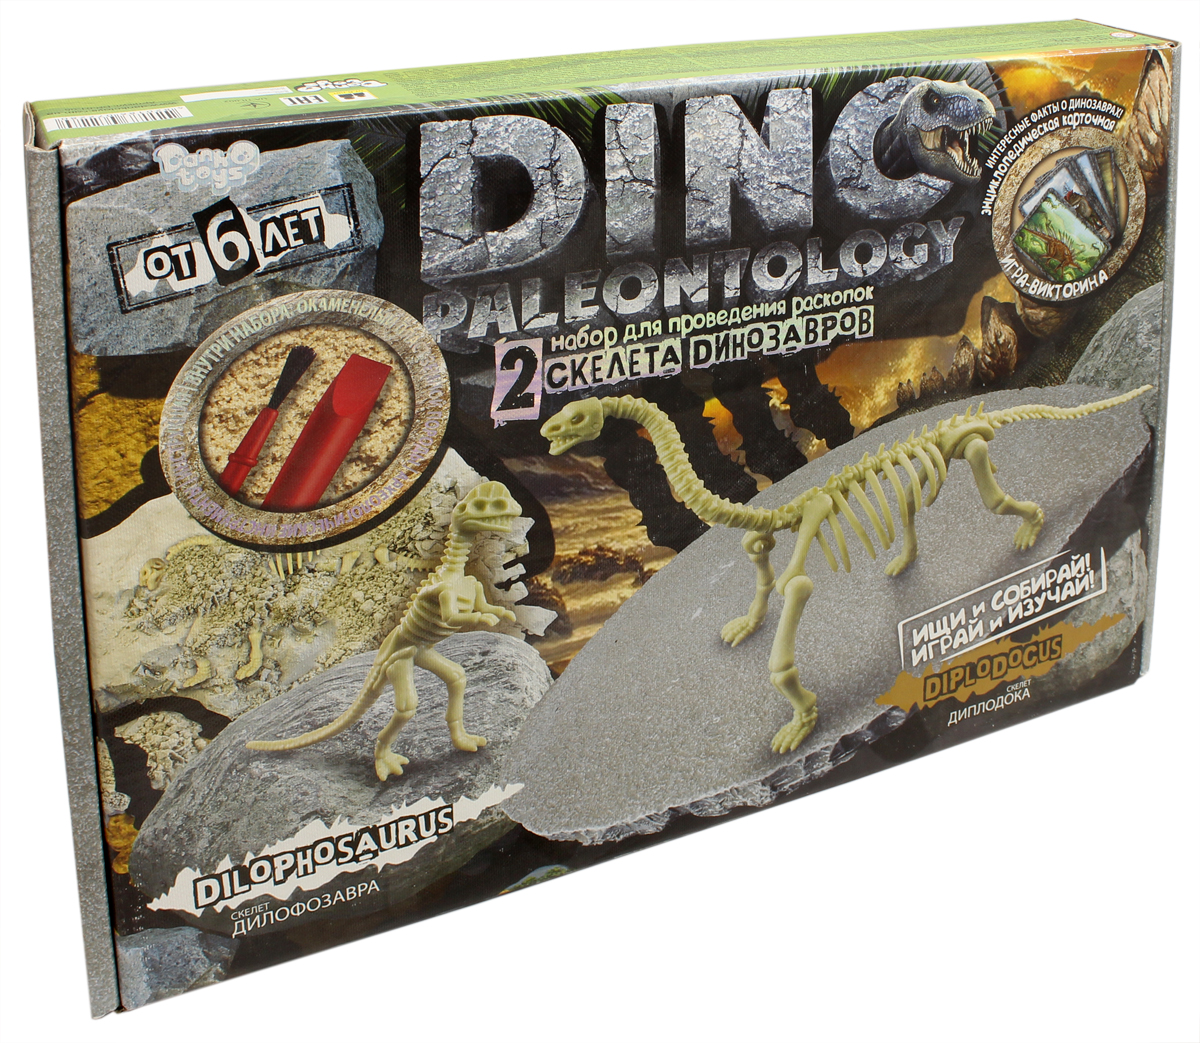 Danko Toys Набор для раскопок Dino Paleontology Набор №5